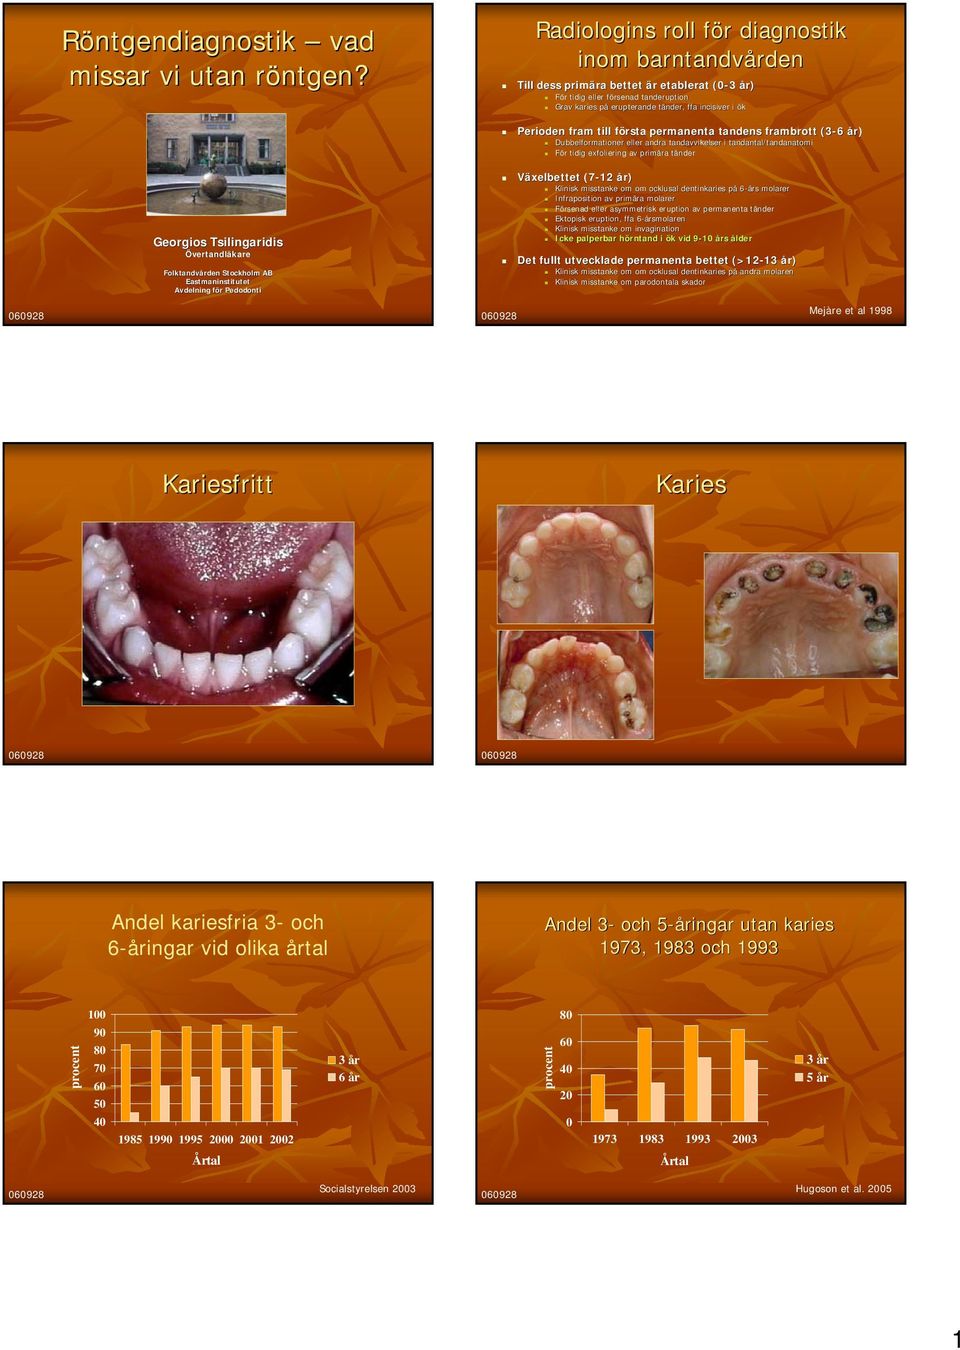 Perioden fram till första permanenta tandens frambrott (3-6 6 år) Dubbelformationer eller andra tandavvikelser i tandantal/tandanatomi tomi För tidig exfoliering av primära tänder Georgios